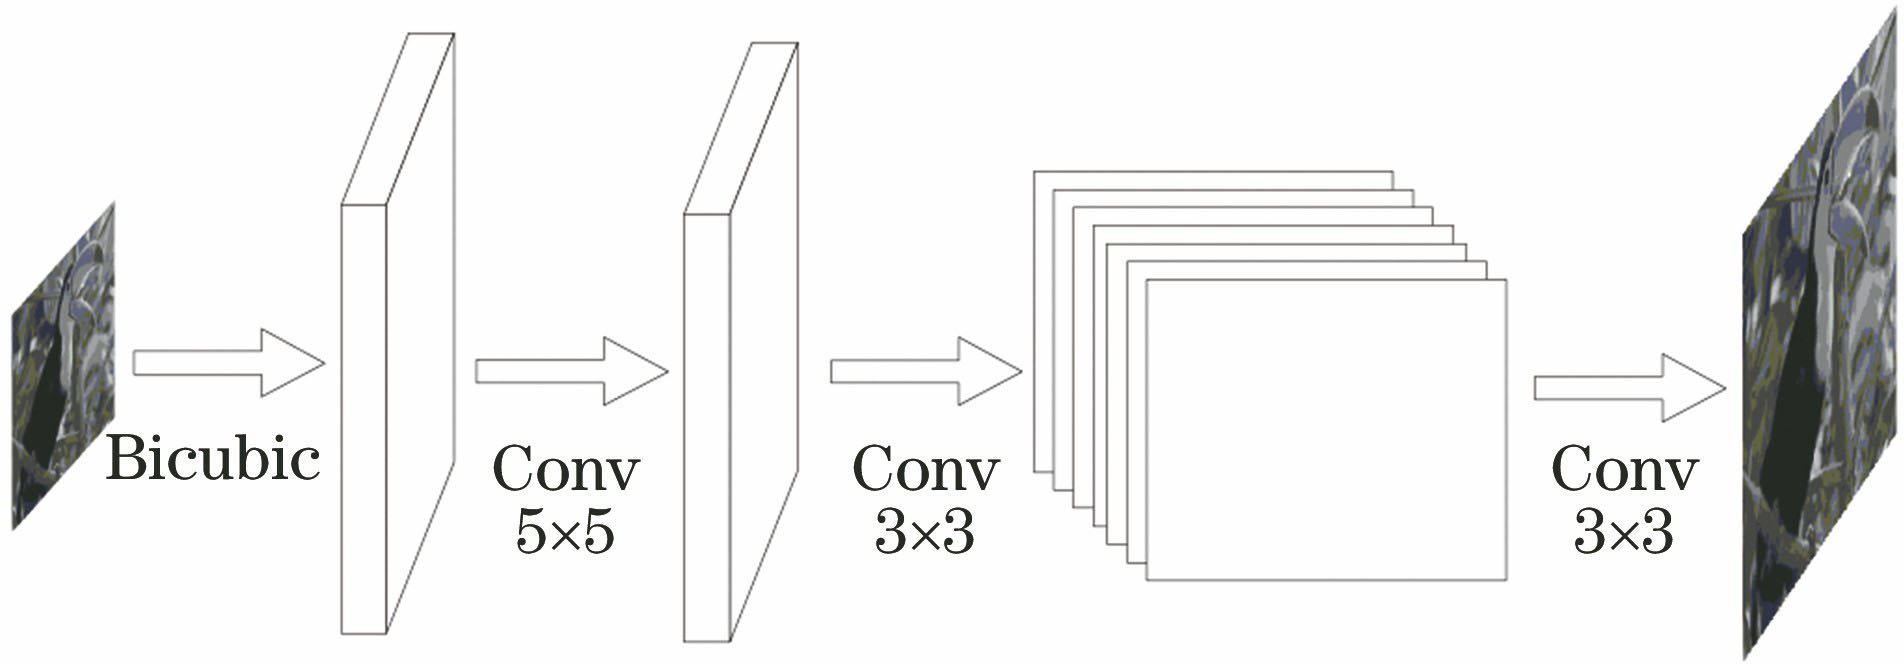 Diagram of ESPCN structure